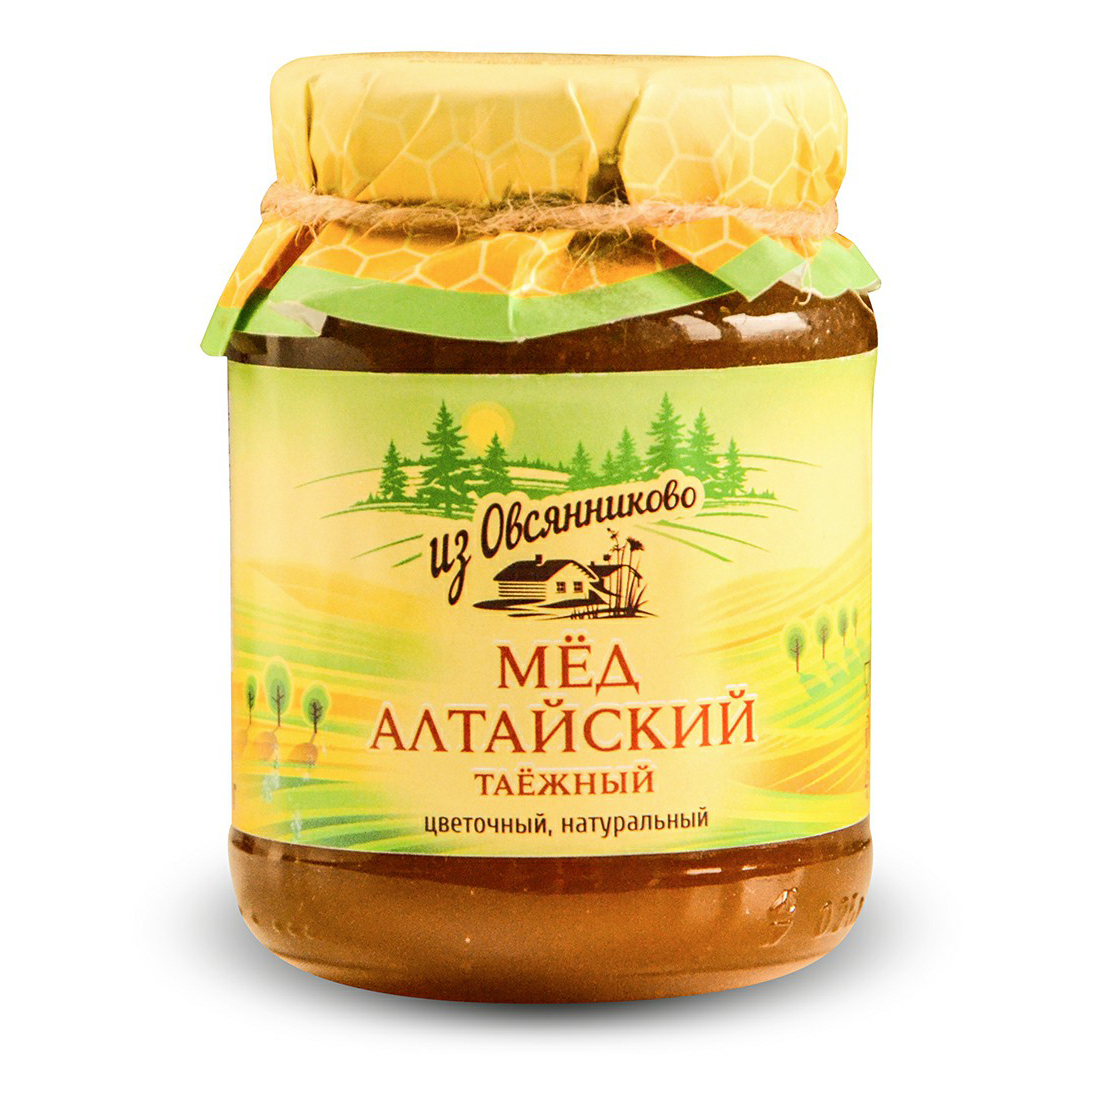 Мед Из Овсянниково Алтайский таежный 350 г